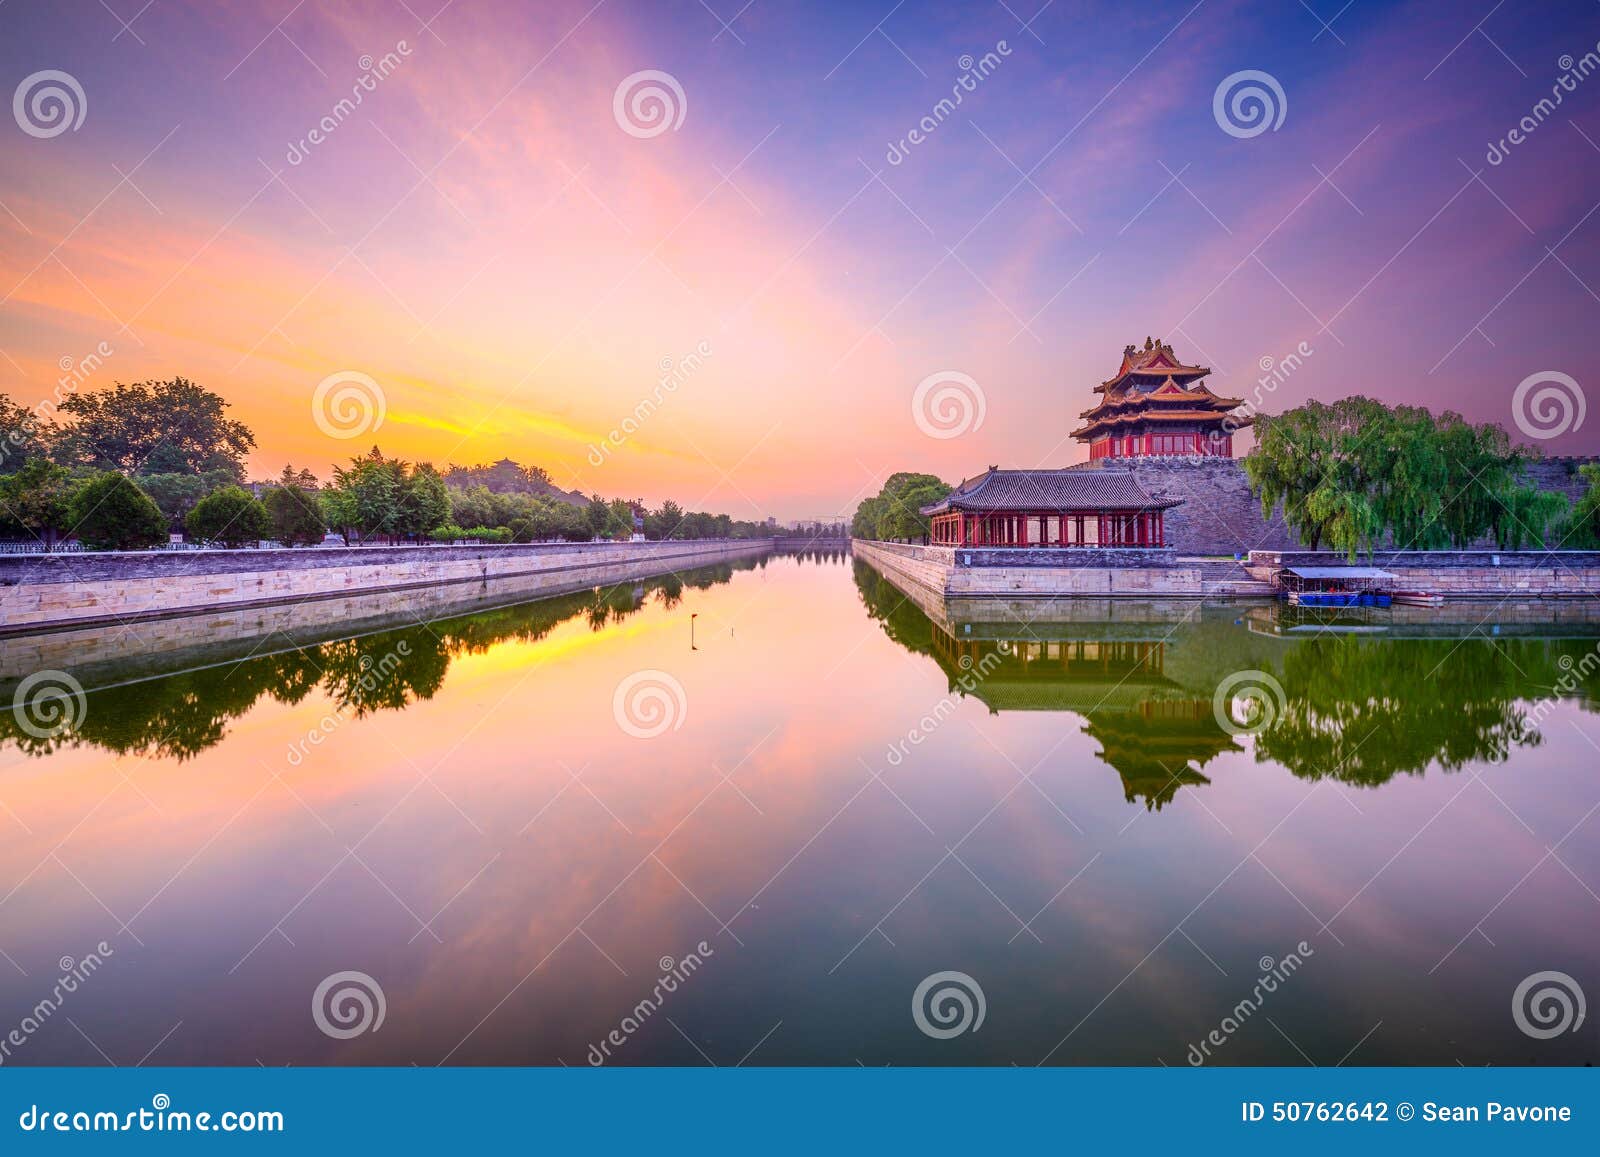 forbidden city moat in beijing